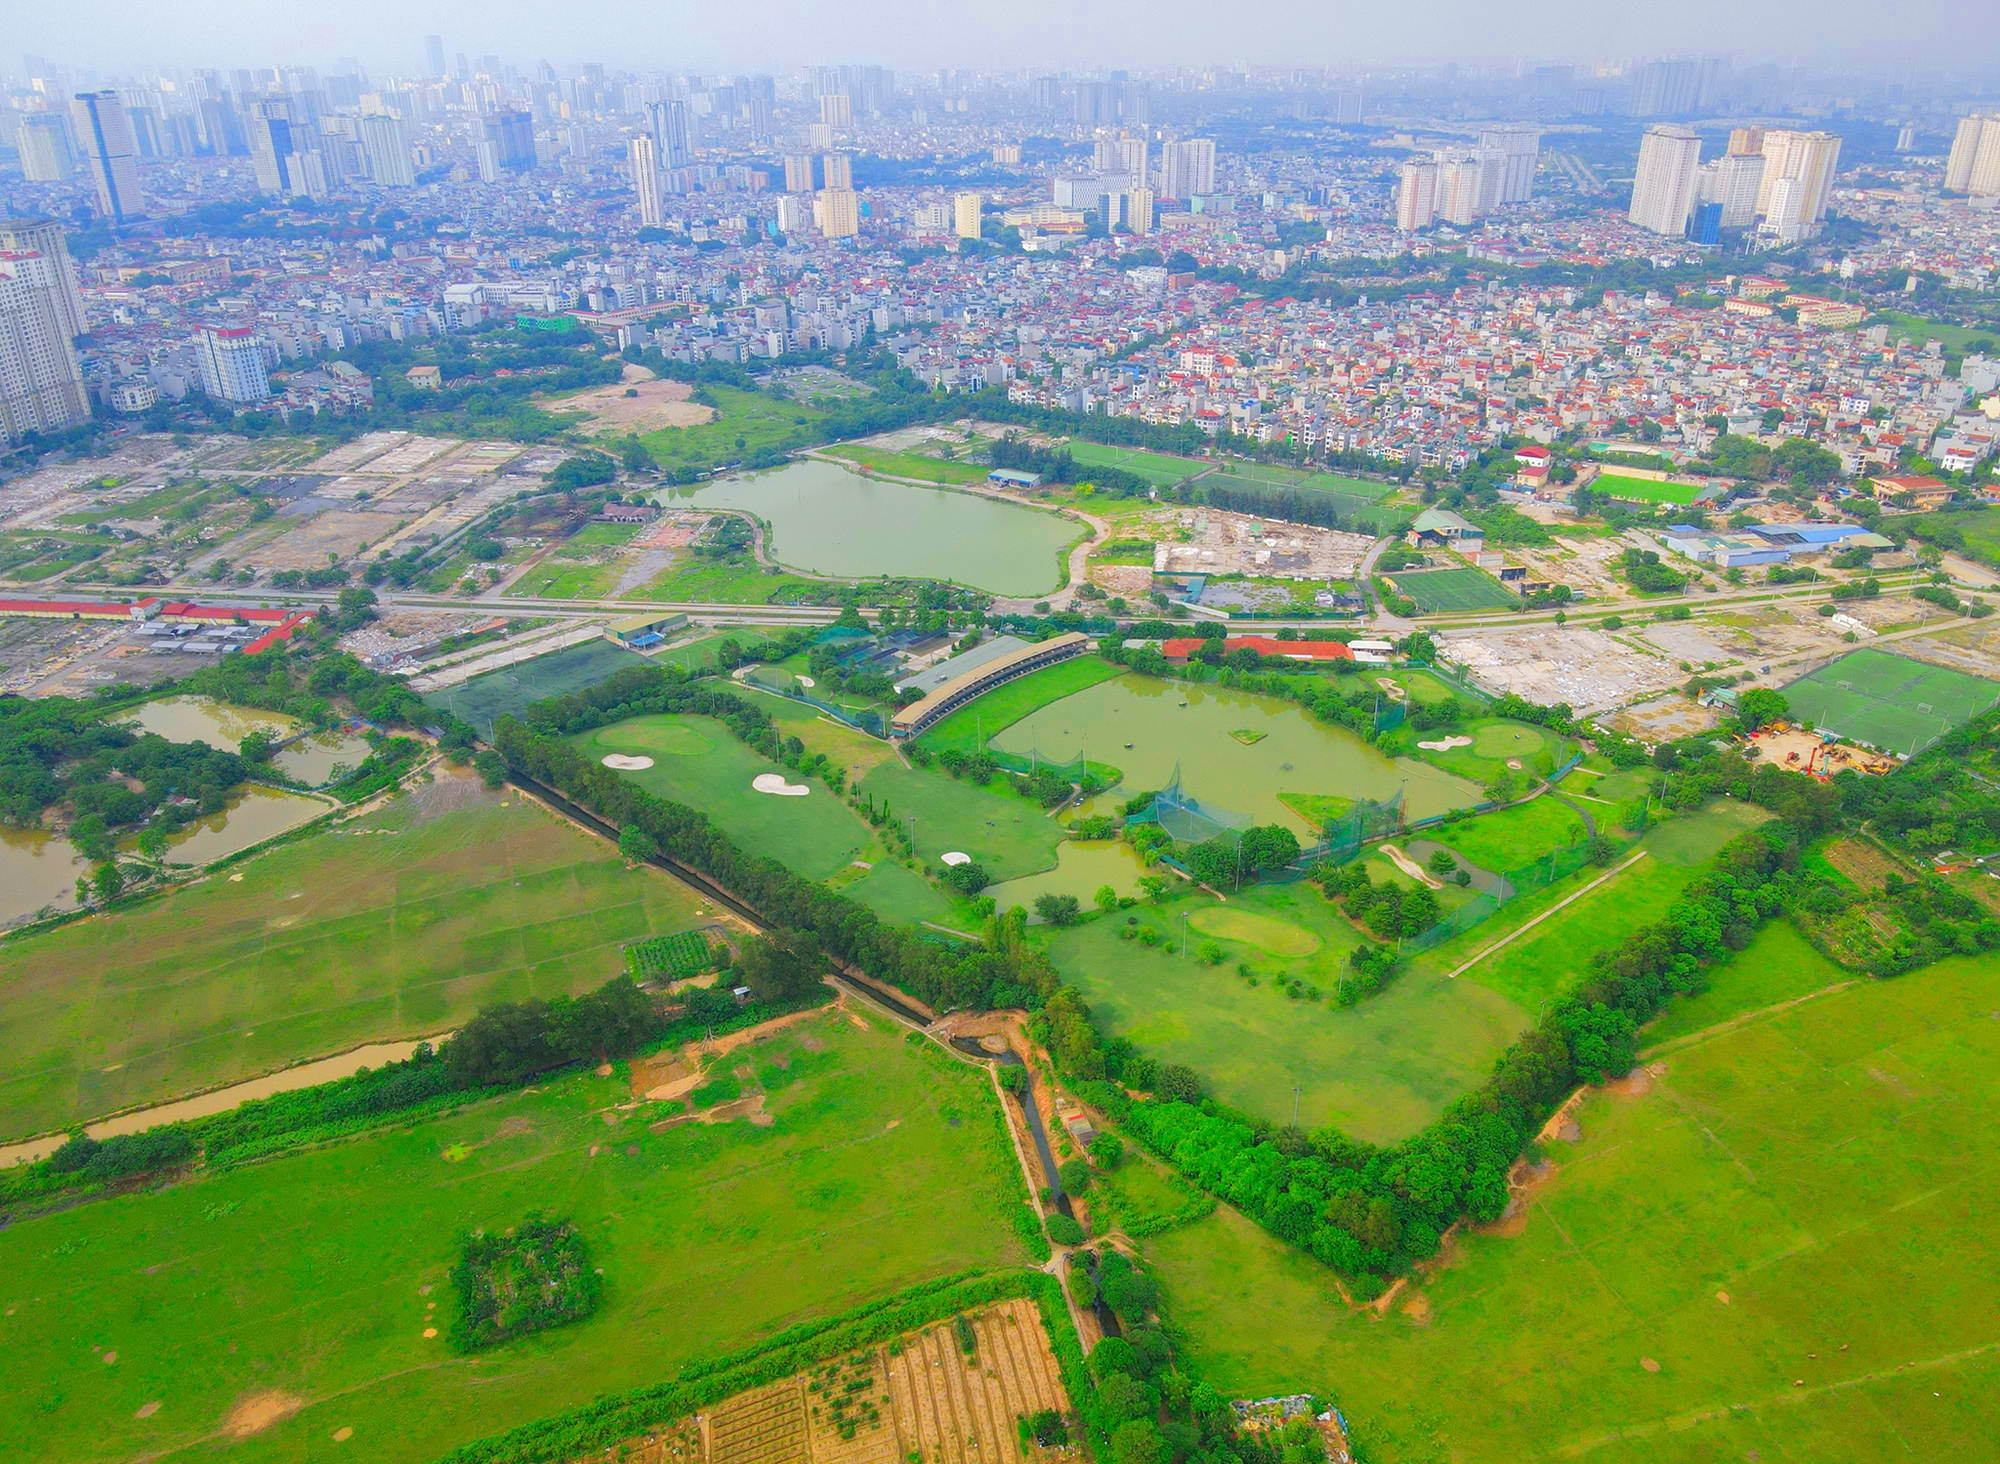 Khu vực sẽ được đầu tư hơn 1.250 tỷ đồng xây dựng dự án công viên lớn thứ 2 Hà Nội: Gấp đôi công viên Thống Nhất, gấp 5 công viên Hòa Bình- Ảnh 2.